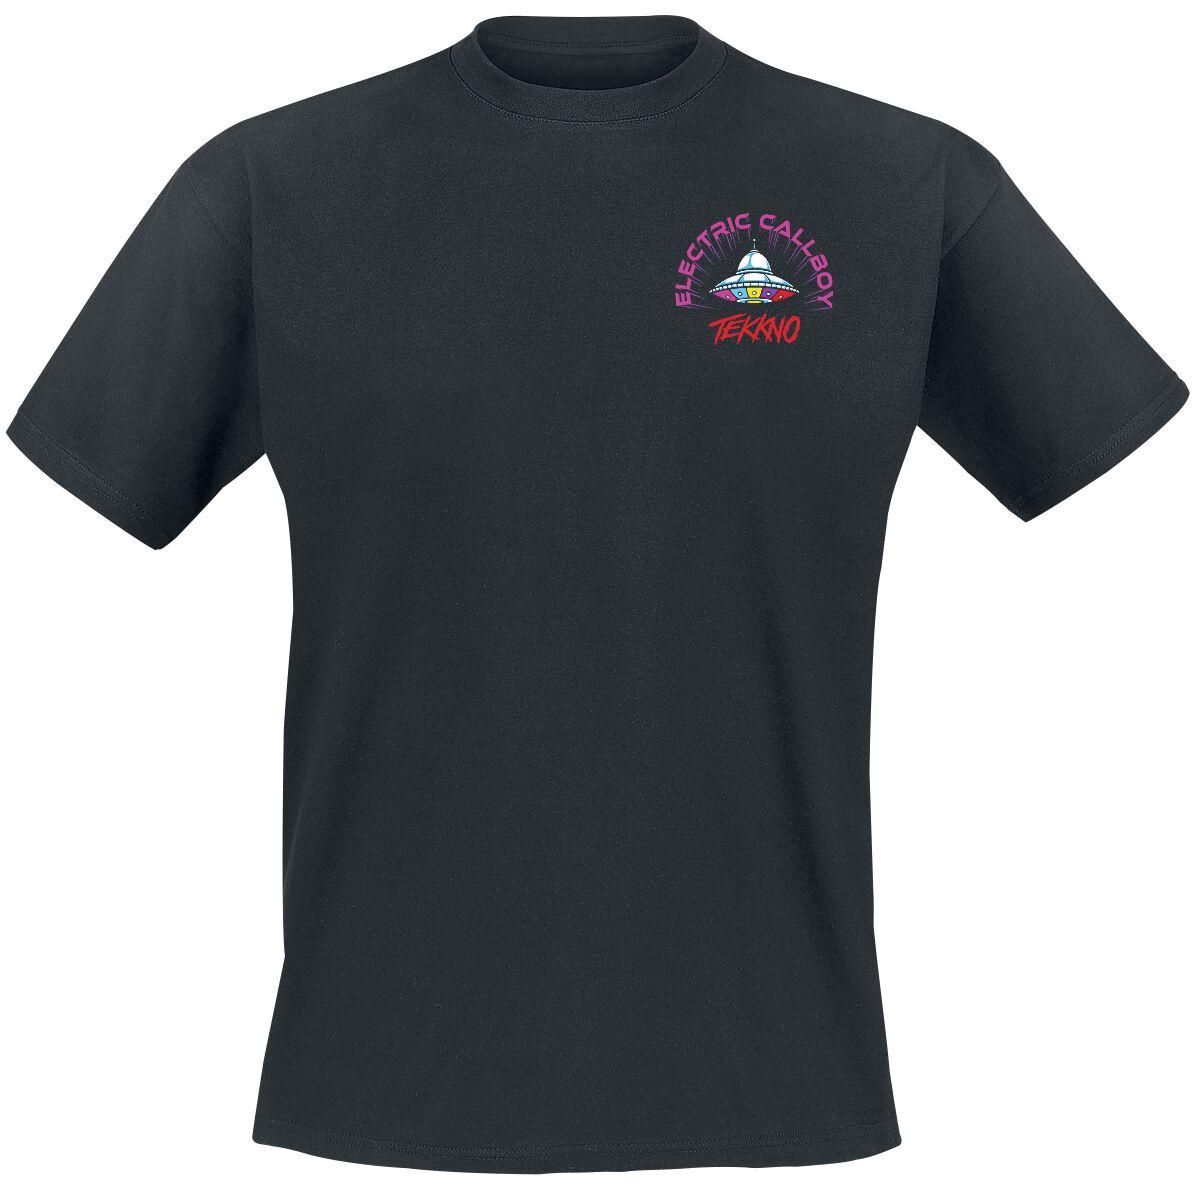 Electric Callboy T-Shirt - Tekkno Pinball - S bis 3XL - für Männer - Größe XL - schwarz  - Lizenziertes Merchandise!